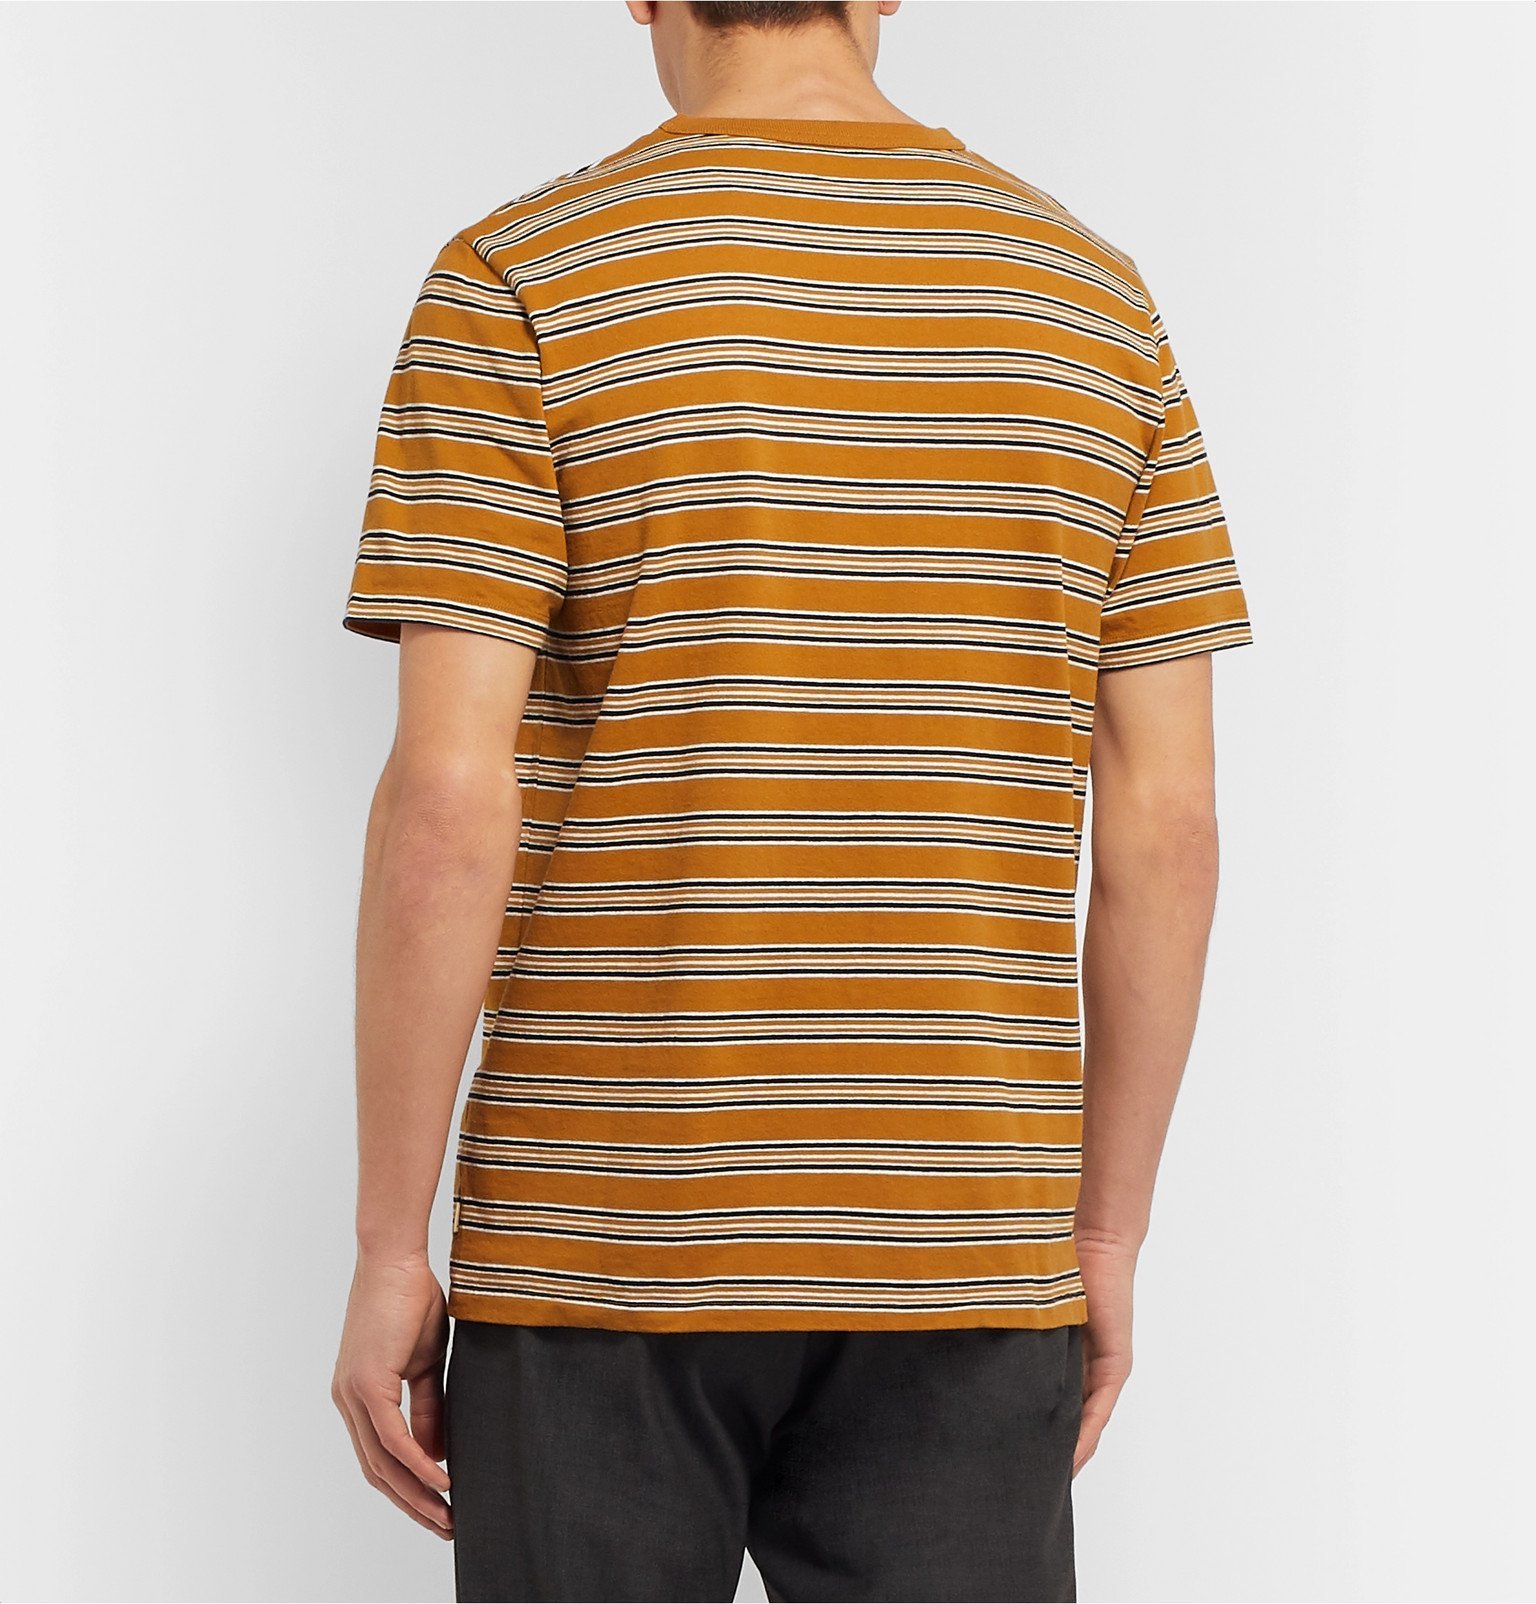 Bellerose - Striped Cotton-Jersey T-Shirt - Yellow Bellerose